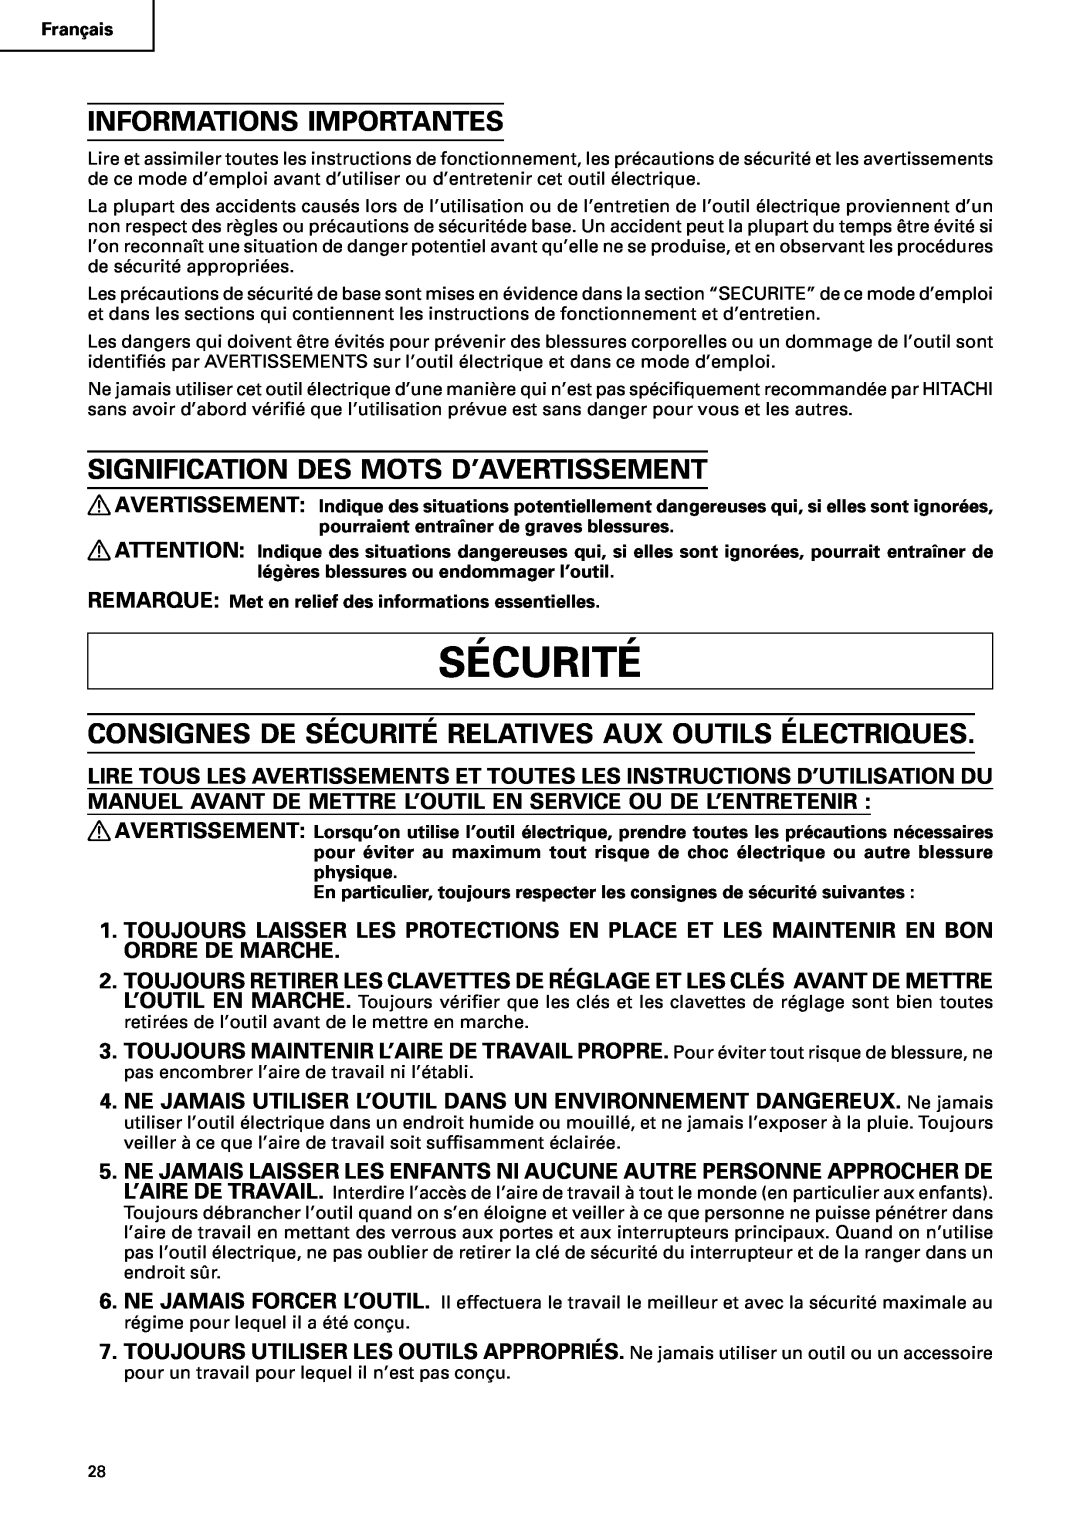 Hitachi C10RA2 instruction manual Sécurité, Informations Importantes, Signification Des Mots D’Avertissement 